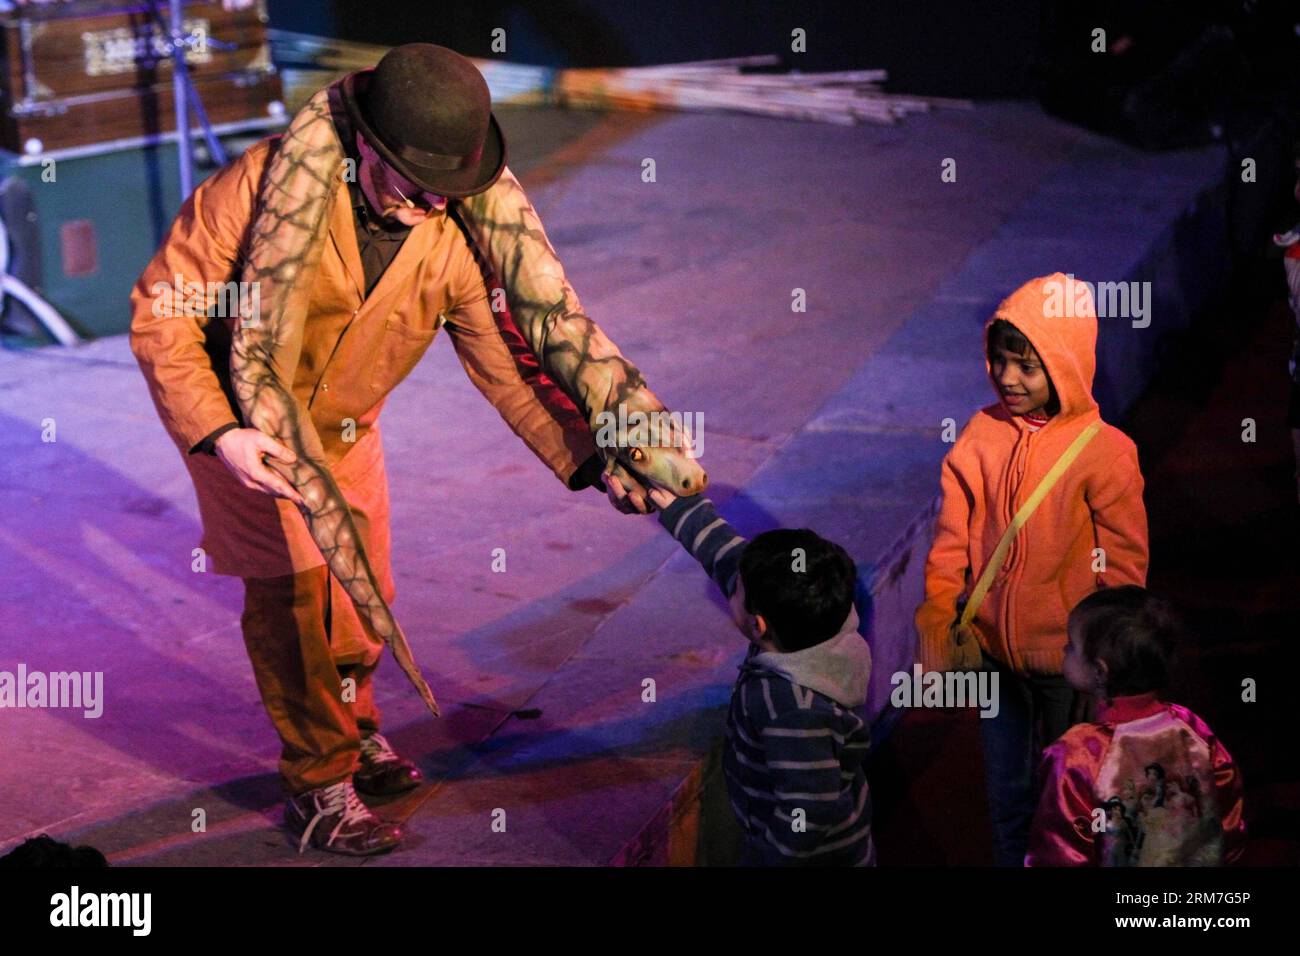 L'artista burattino irlandese Thomas Baker si esibisce con giovani spettatori al 12 ° Ishara International Puppet Festival in India Habitat Center a nuova Delhi, capitale dell'India, 2 marzo 2014. Il festival, che include spettacoli di artisti burattini provenienti da molti paesi come il Regno Unito, Israele, Irlanda, ha attirato molti bambini e adulti in città. Il festival durerà fino al 4 marzo. (Xinhua/Zheng Huansong)(ctt) INDIA-NEW DELHI-PUPPET-FESTIVAL PUBLICATIONxNOTxINxCHN Ireland Puppet Artist Thomas Baker si esibisce con giovani spettatori AL 12 ° Ishara International Puppet Festival di Indi Foto Stock